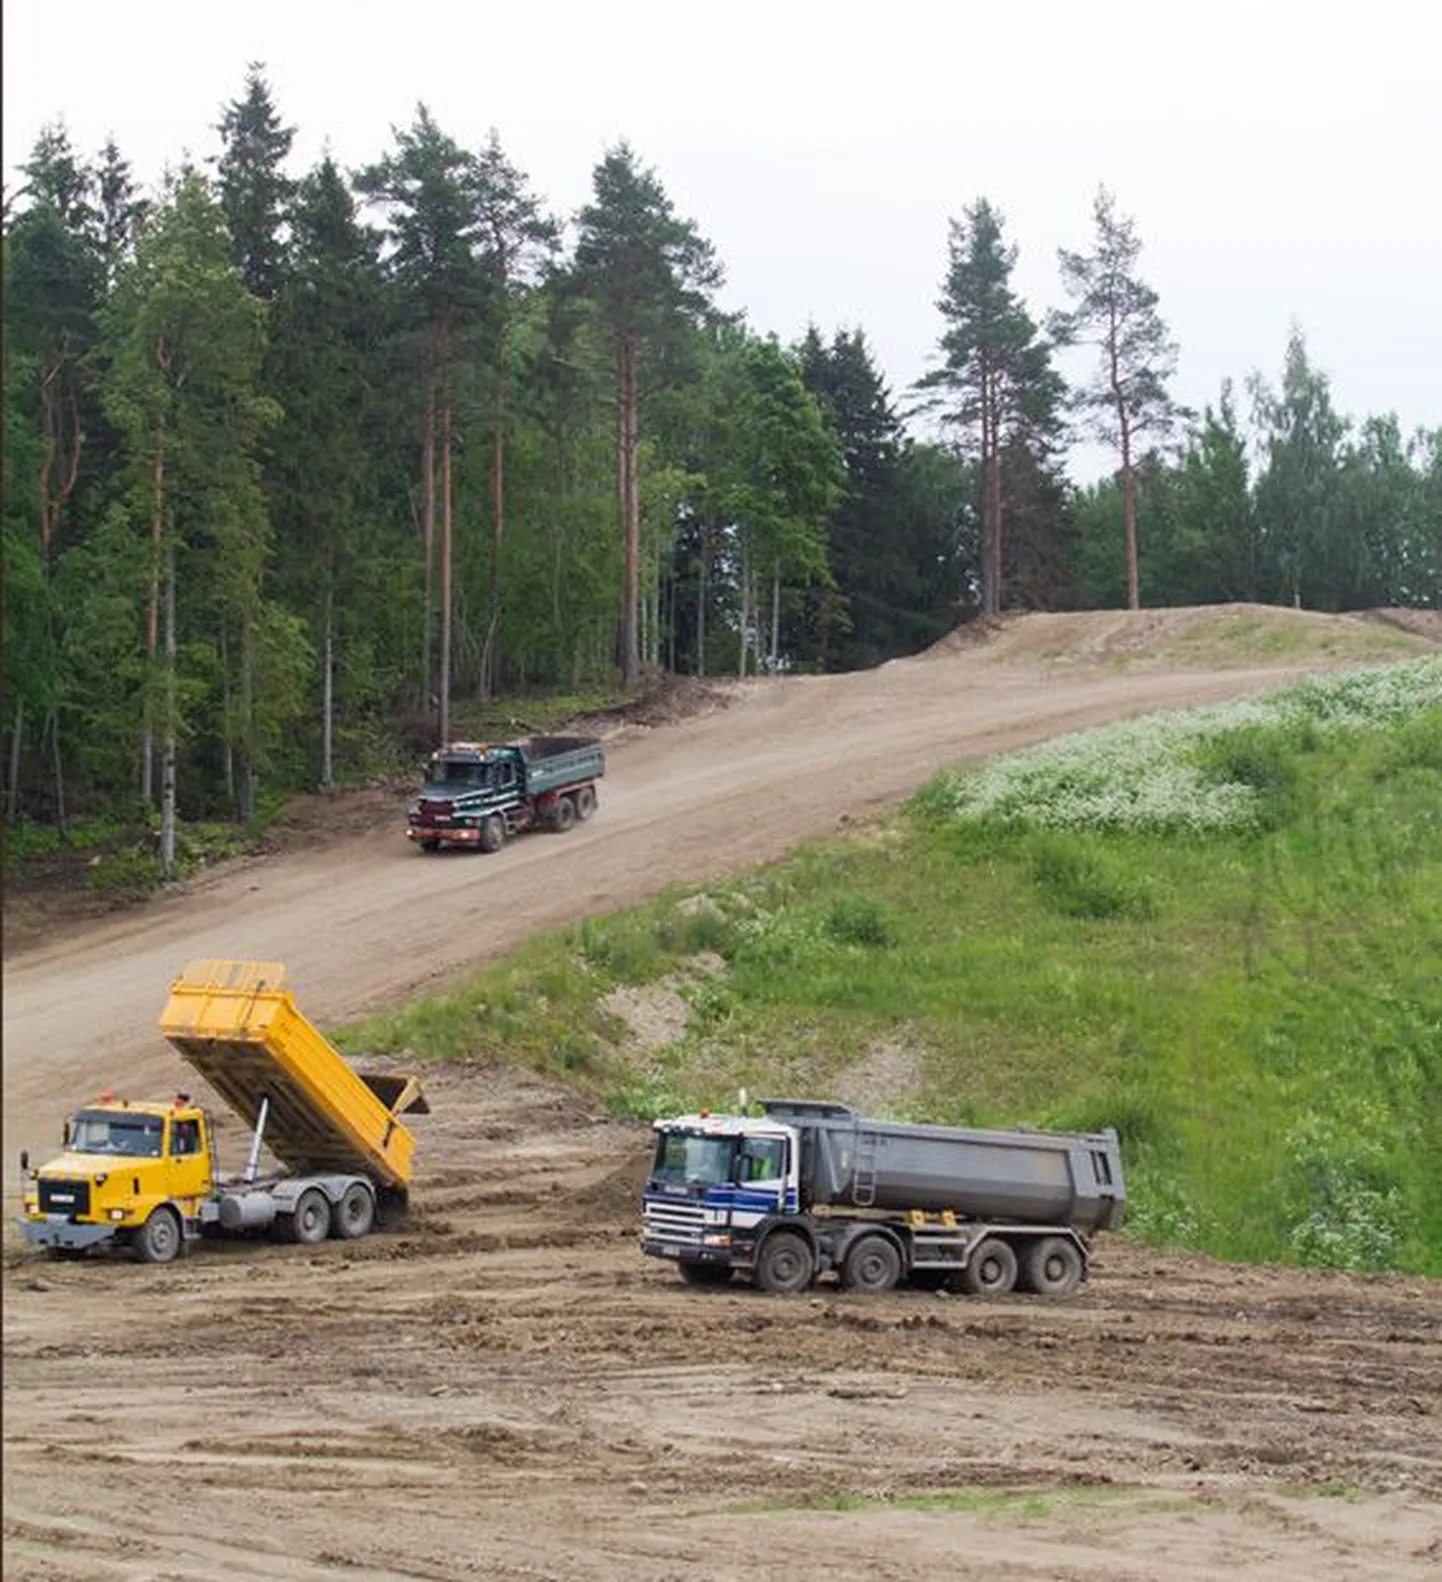 Päevas voorib Rakveres Kõrgemäele 30-50 suurt veoautot koormatäie pinnasega, mille abil mäge suuremaks kasvatatakse.